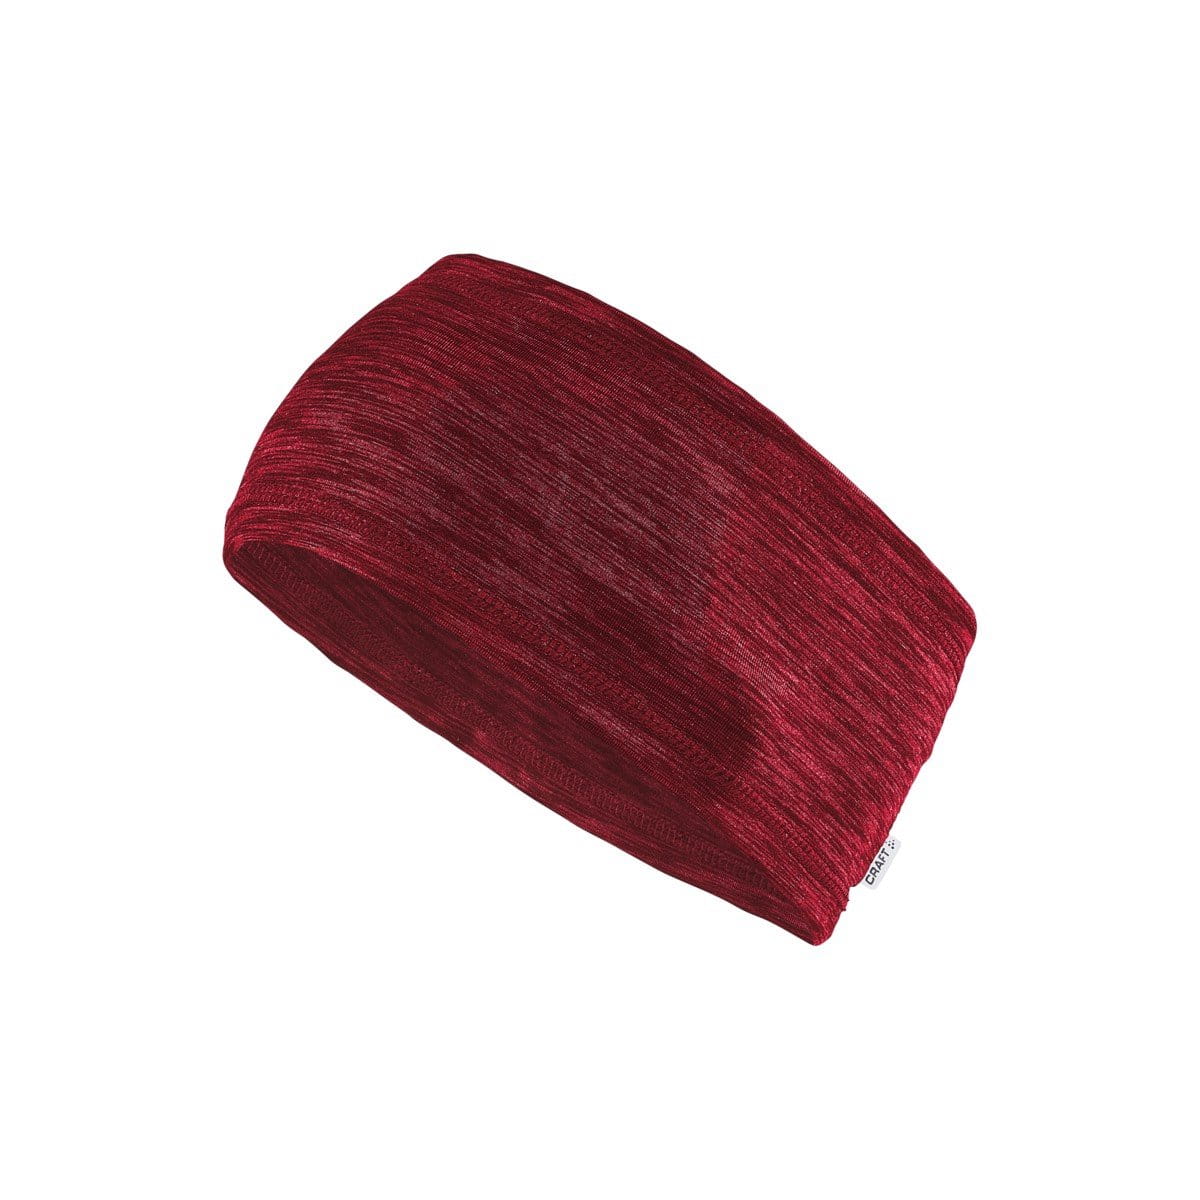 Unisex sportovní čepice Craft Čelenka Melange červená